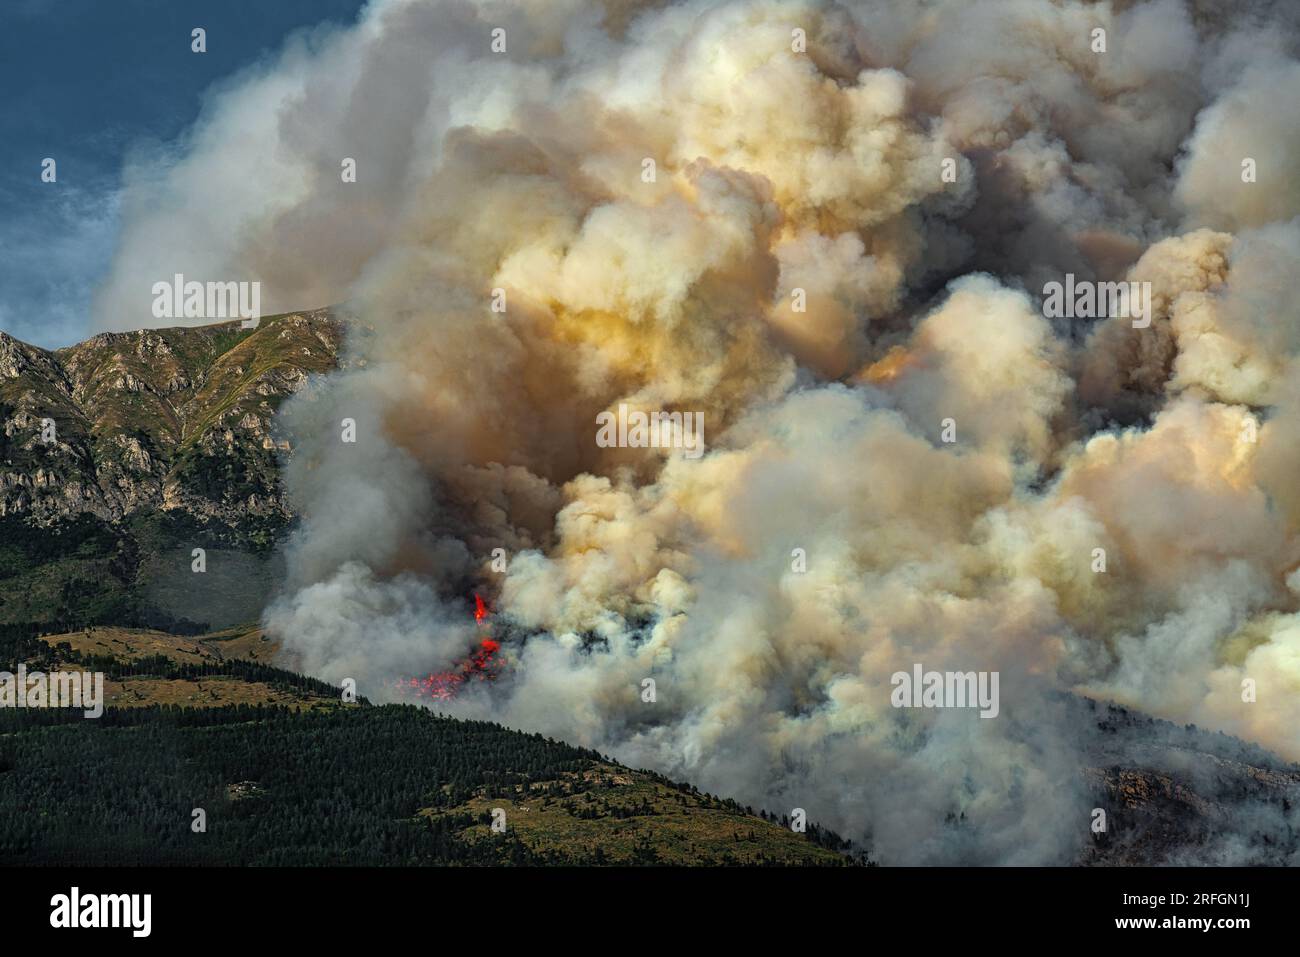 Scena drammatica con fiamme e fumo provenienti da un incendio boschivo in estate. Monte Morrone, Parco Nazionale della Maiella Foto Stock